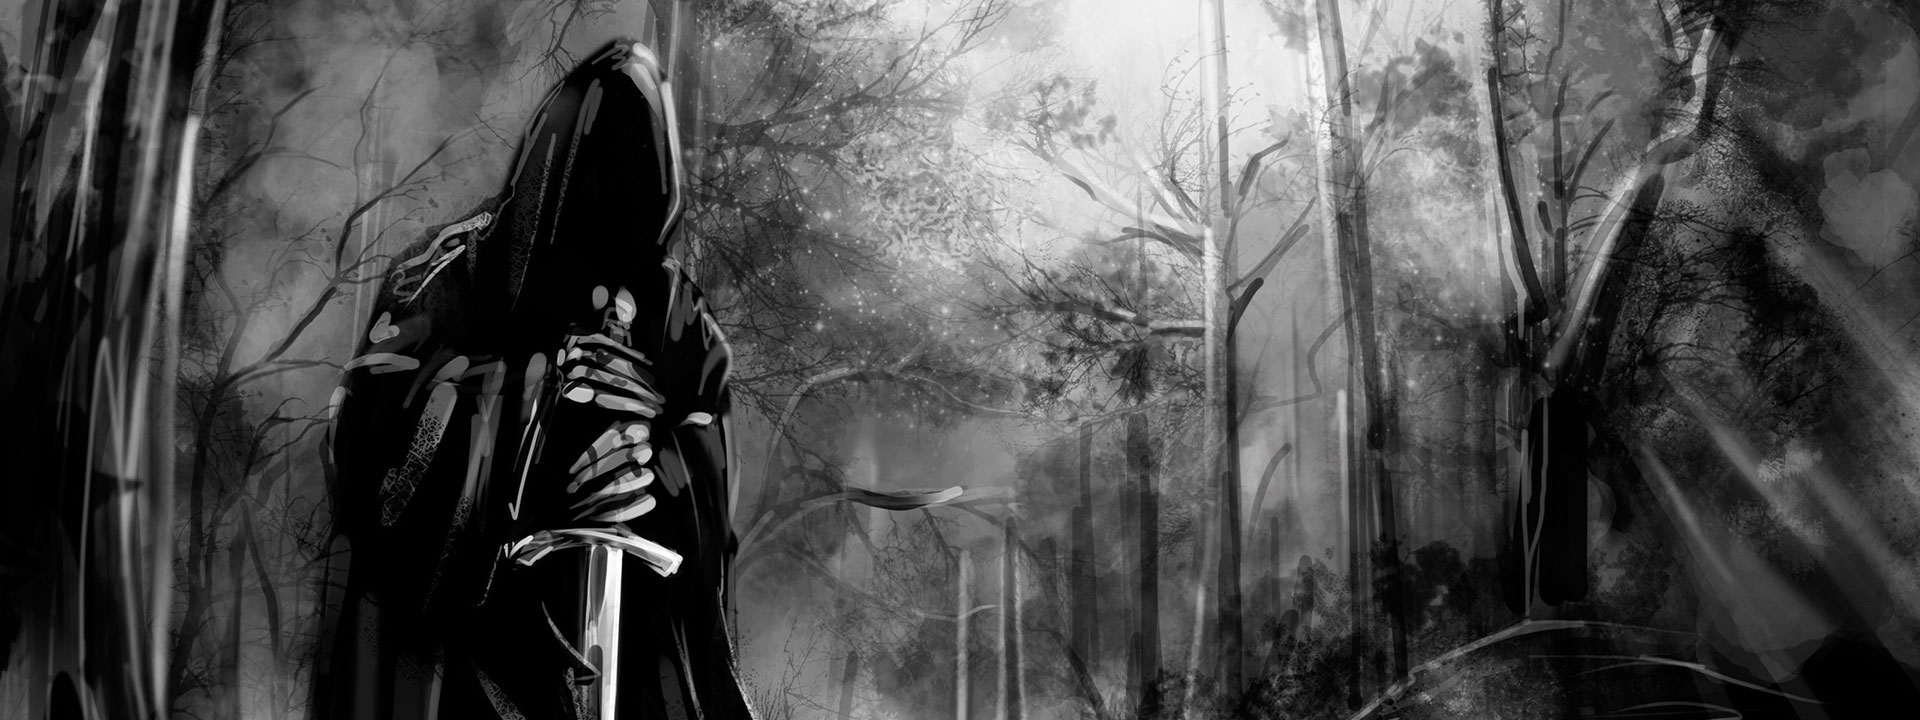 Imagem do podcast TESTE 8 do RPG Next - ser encapuzado segurando uma espada no meio da floresta